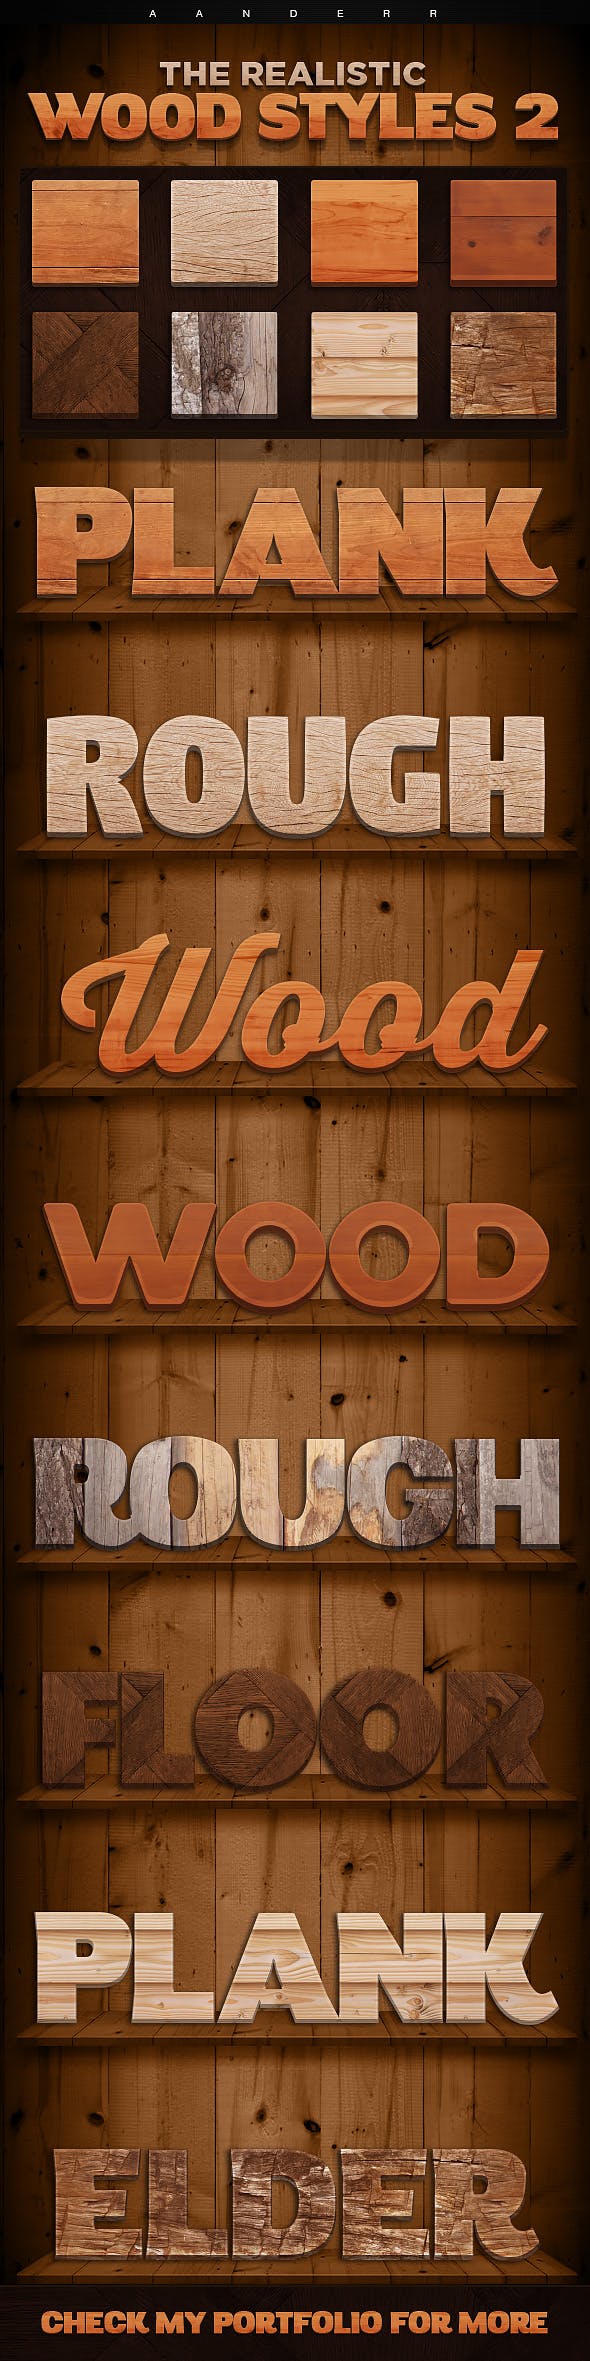 真实的木质效果的字体图层样式 The Realistic Wood Styles插图